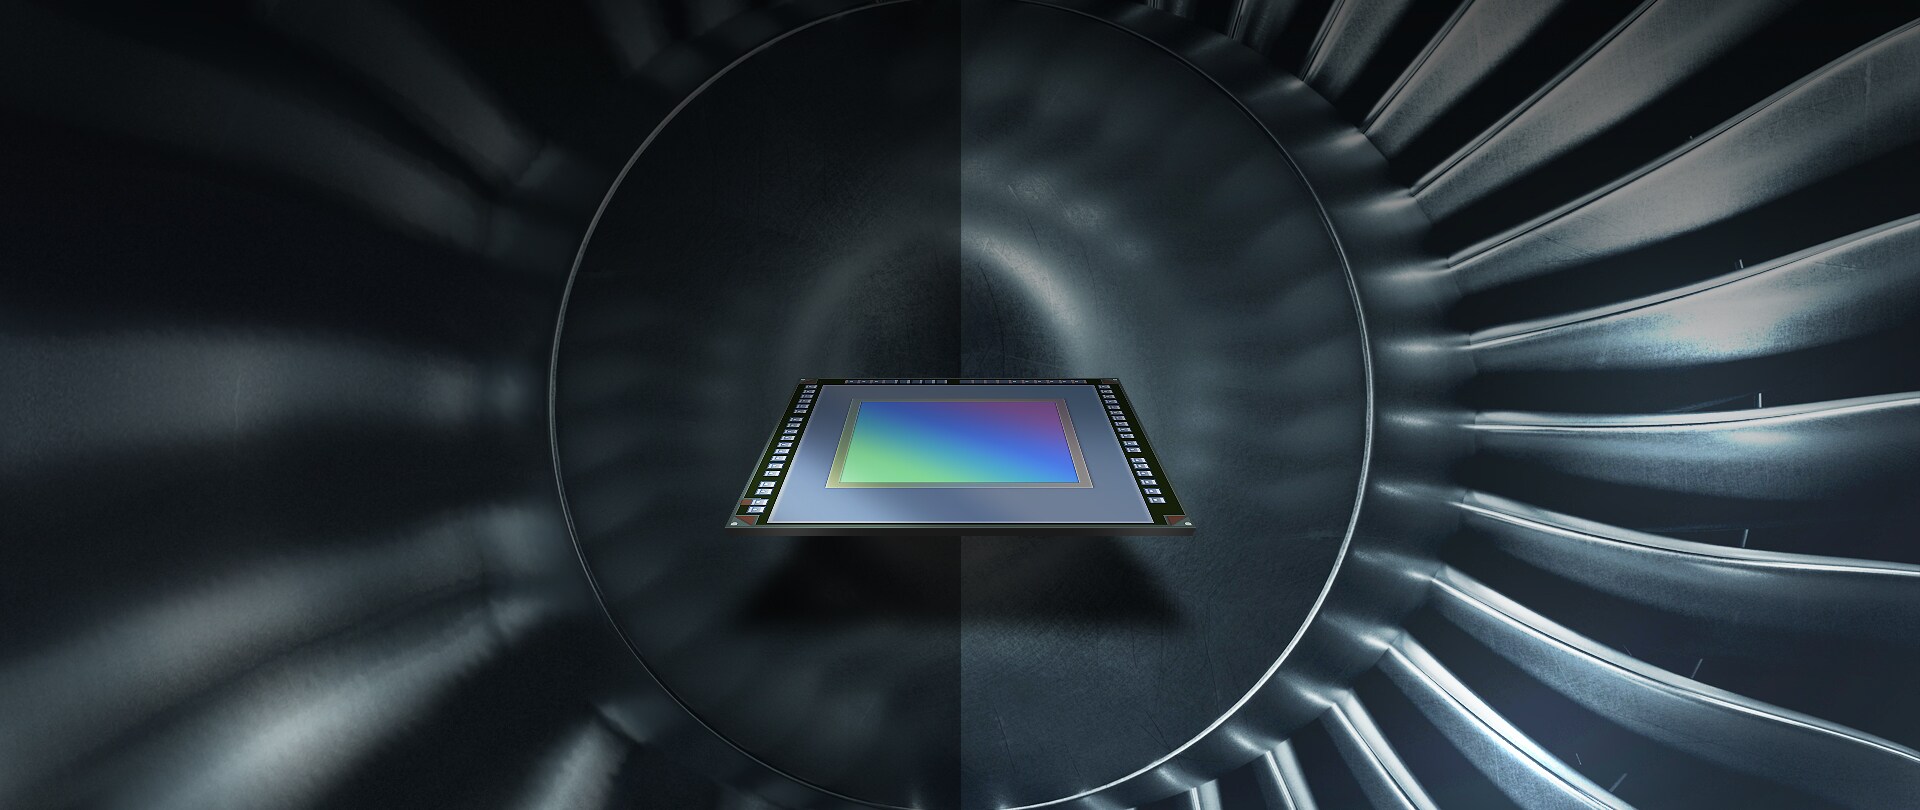 아이소셀 비전 글로벌 셔터 칩은 엔진 날개처럼 빠르게 움직이는 피사체를 왜곡 없이 포착할 수 있는 삼성 반도체의 기술력을 보여줍니다.